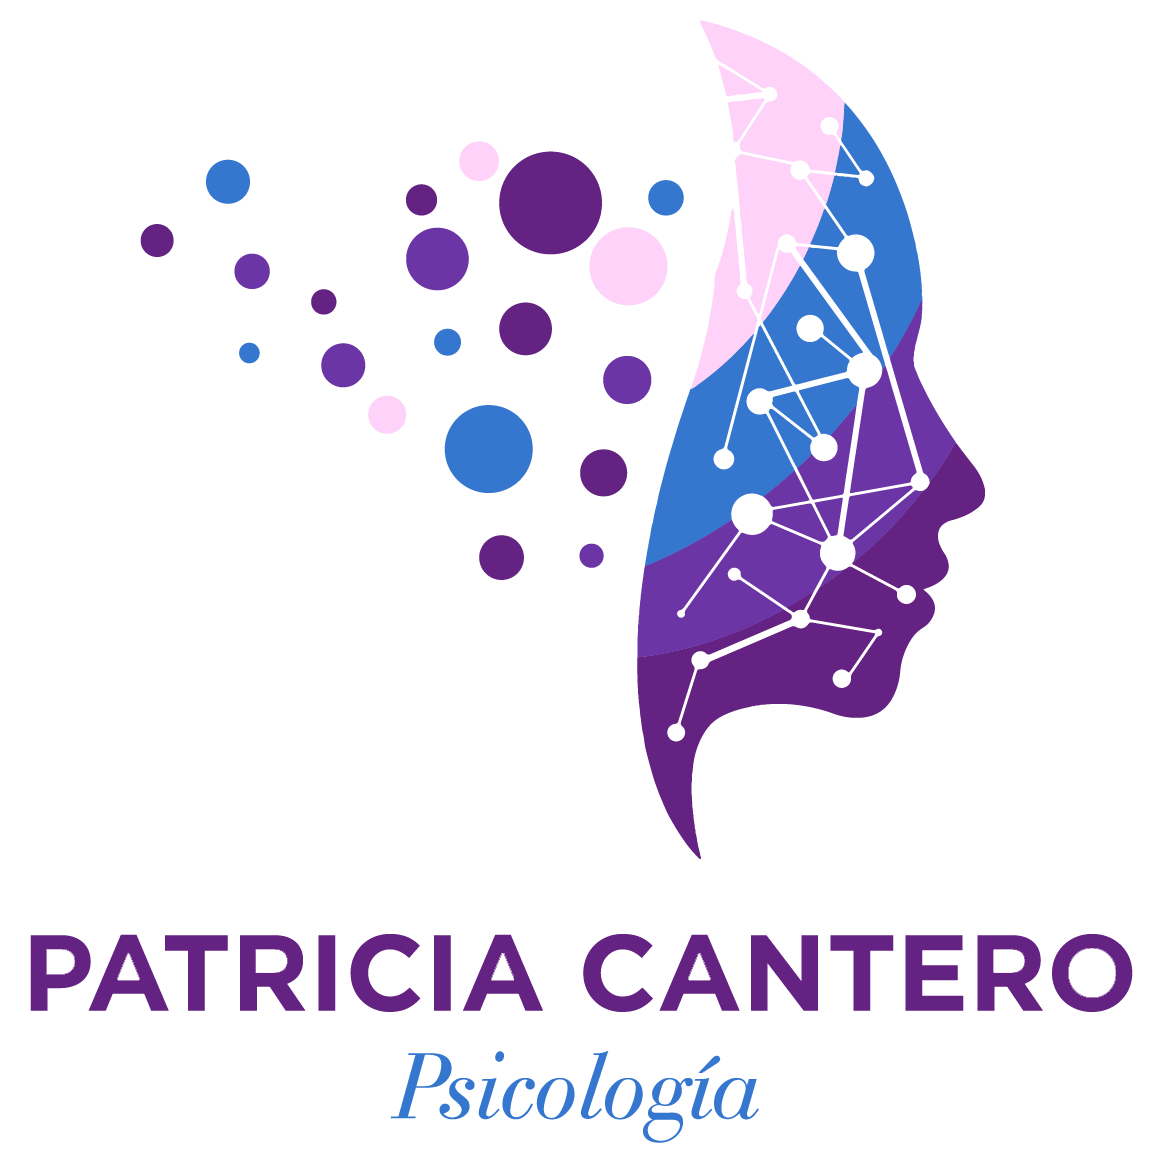 Patricia Cantero